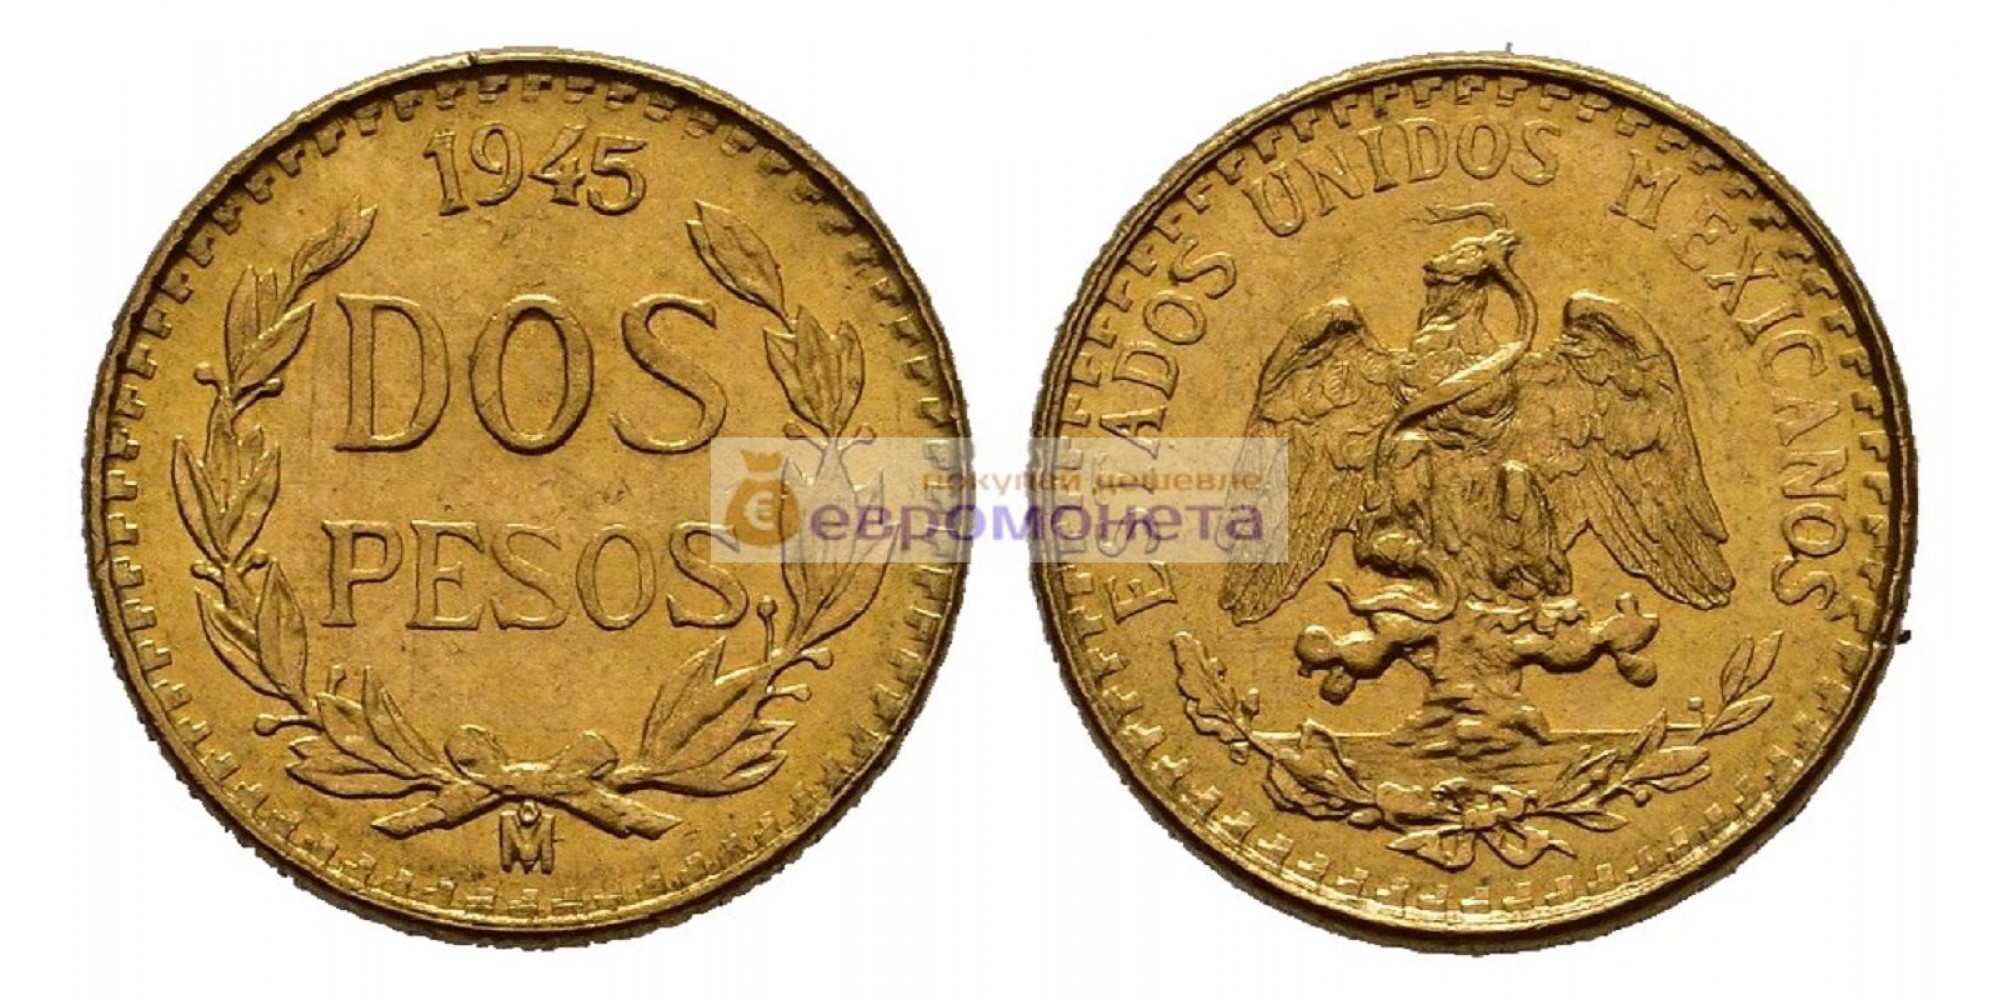 Мексиканские Соединённые Штаты Мексика 2 песо 1945 год. Золото.